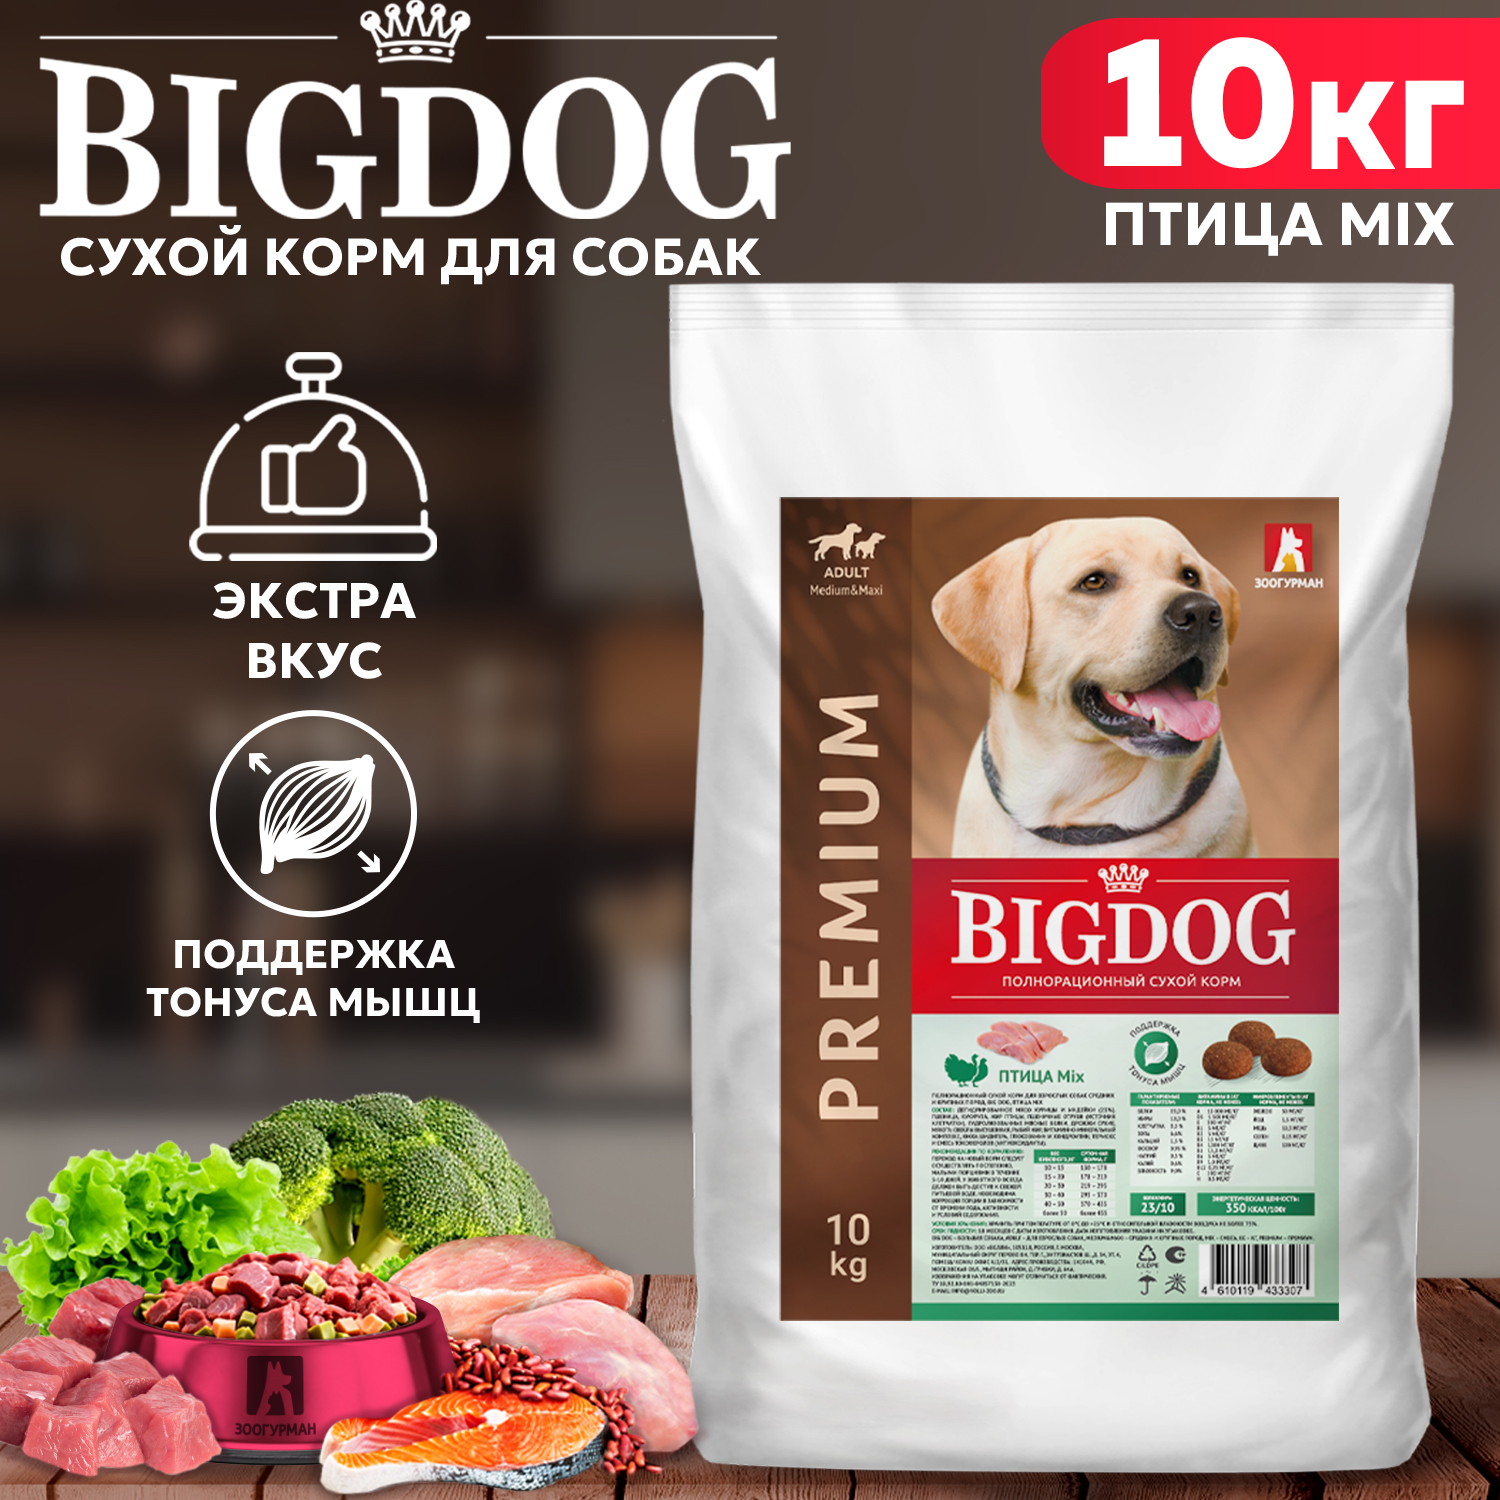 Сухой корм для собак BIG DOG, для средних и крупных пород, птица MIX, 10 кг